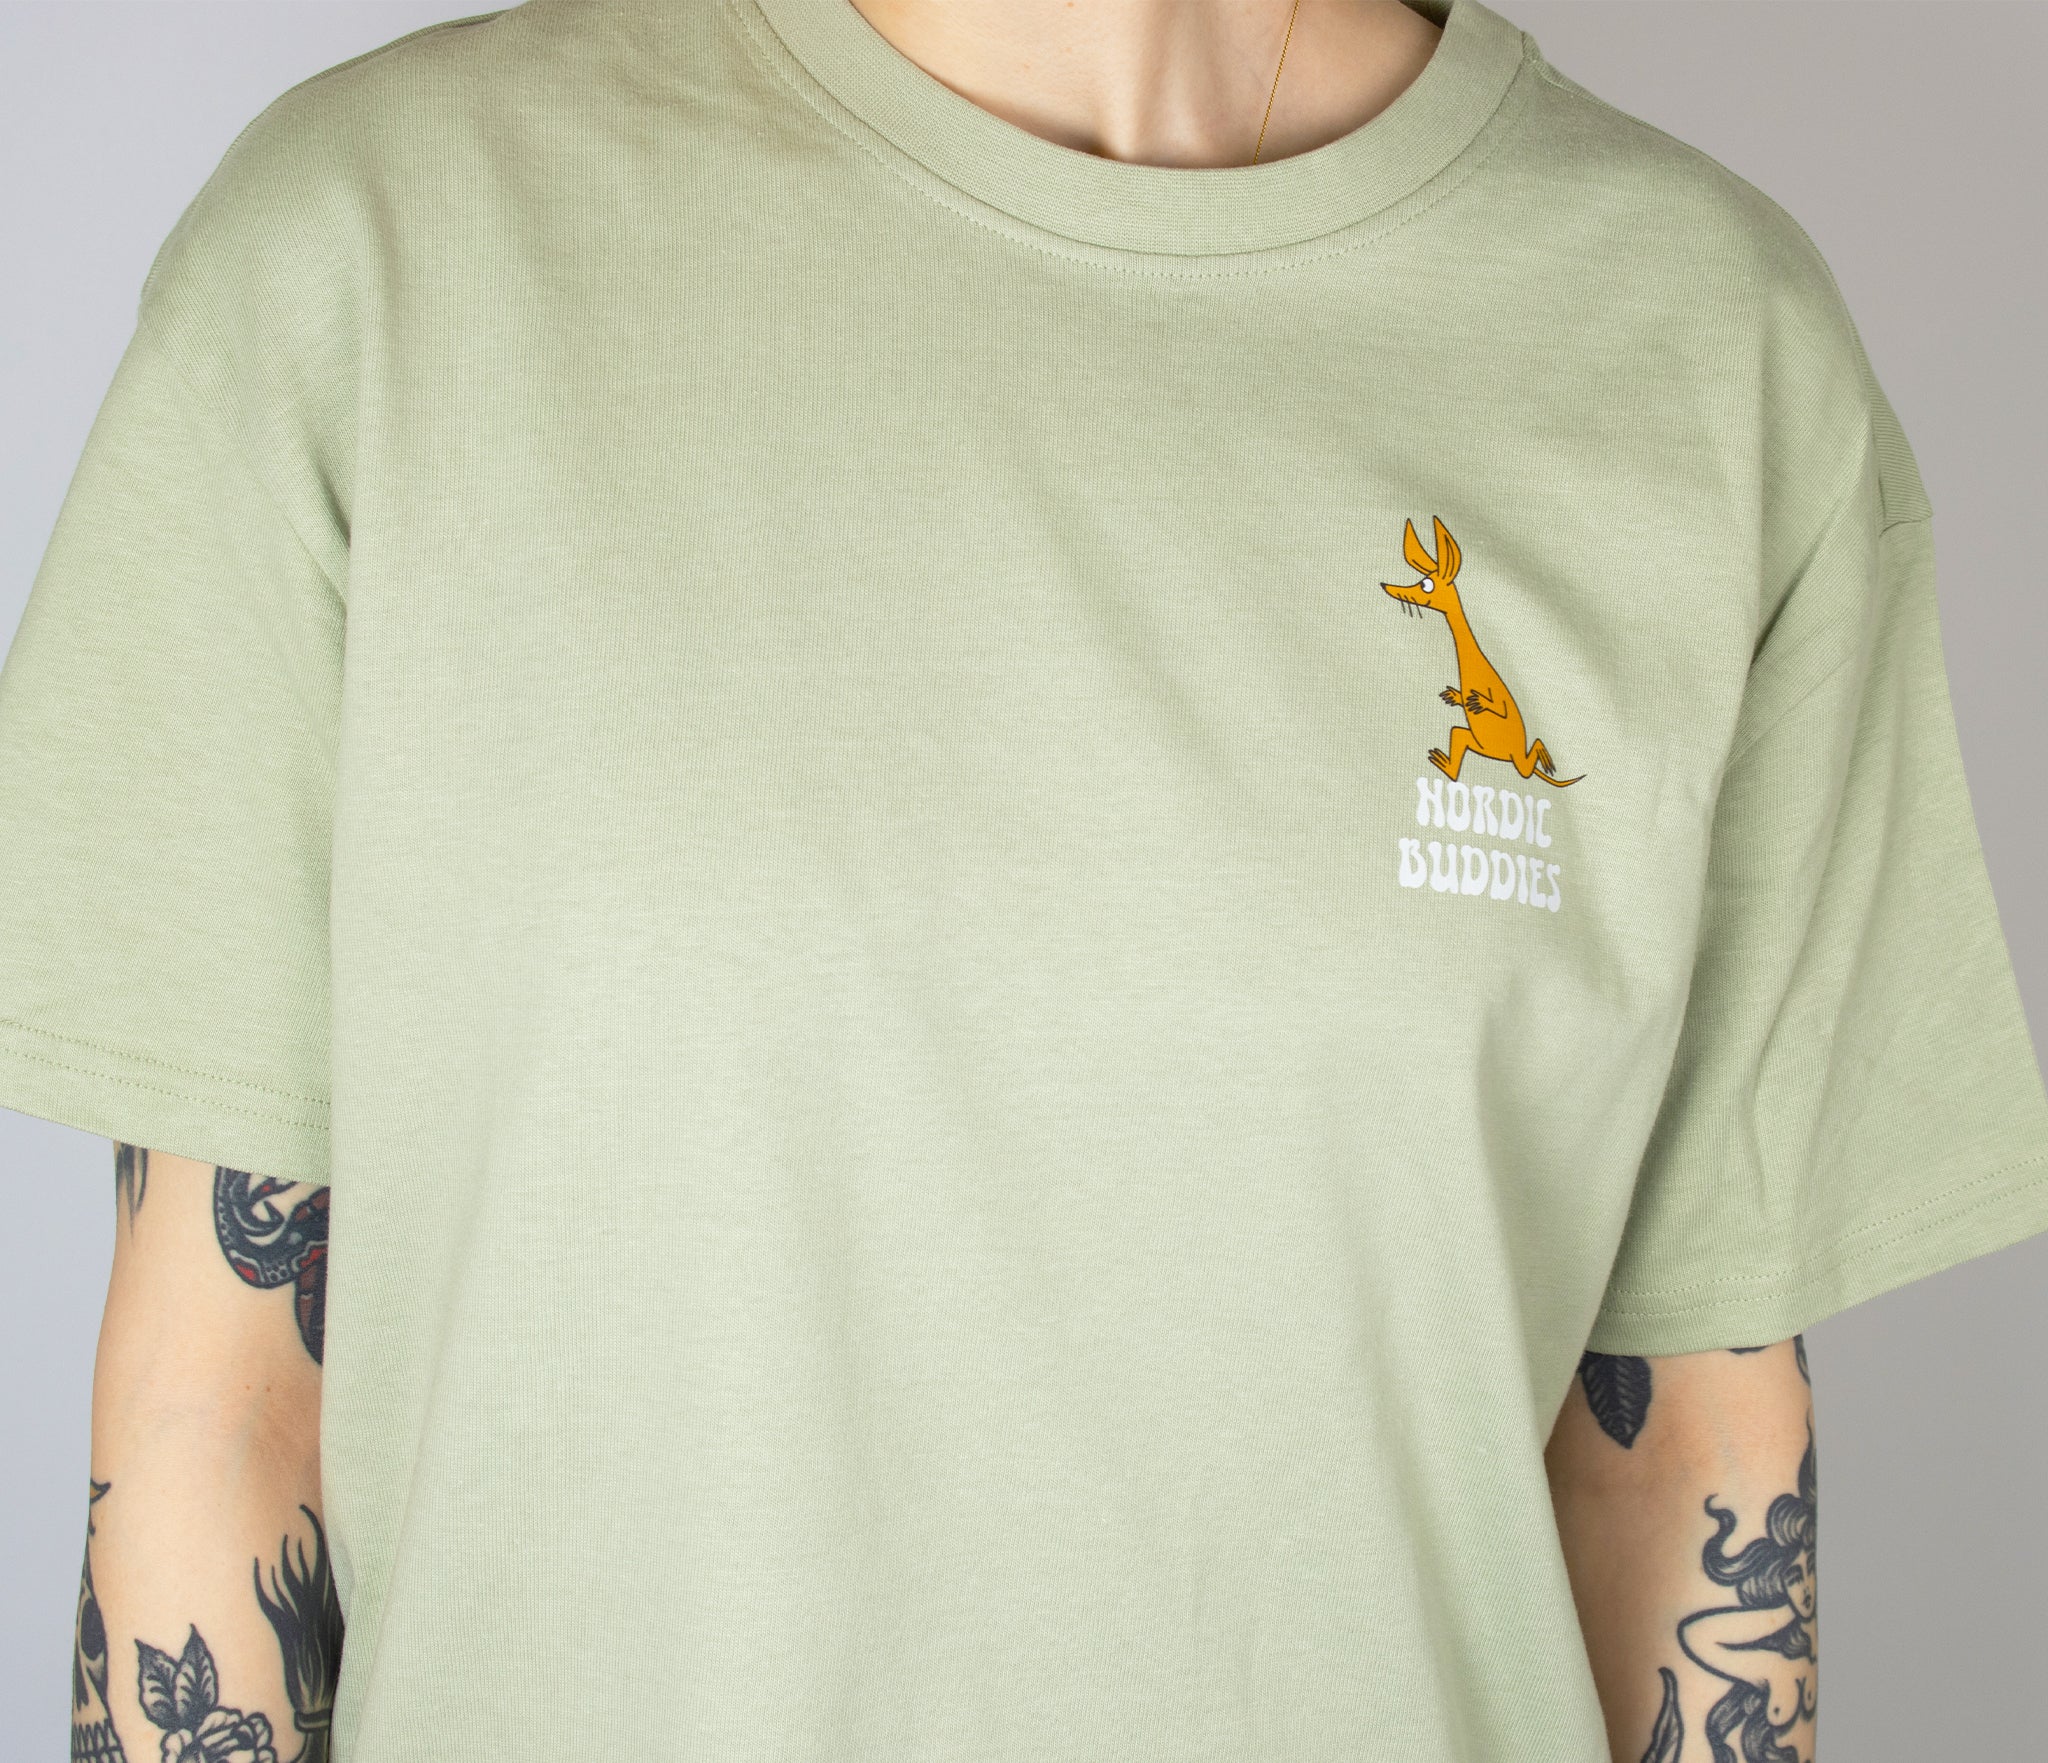 T-Shirt Sniff - Light Green